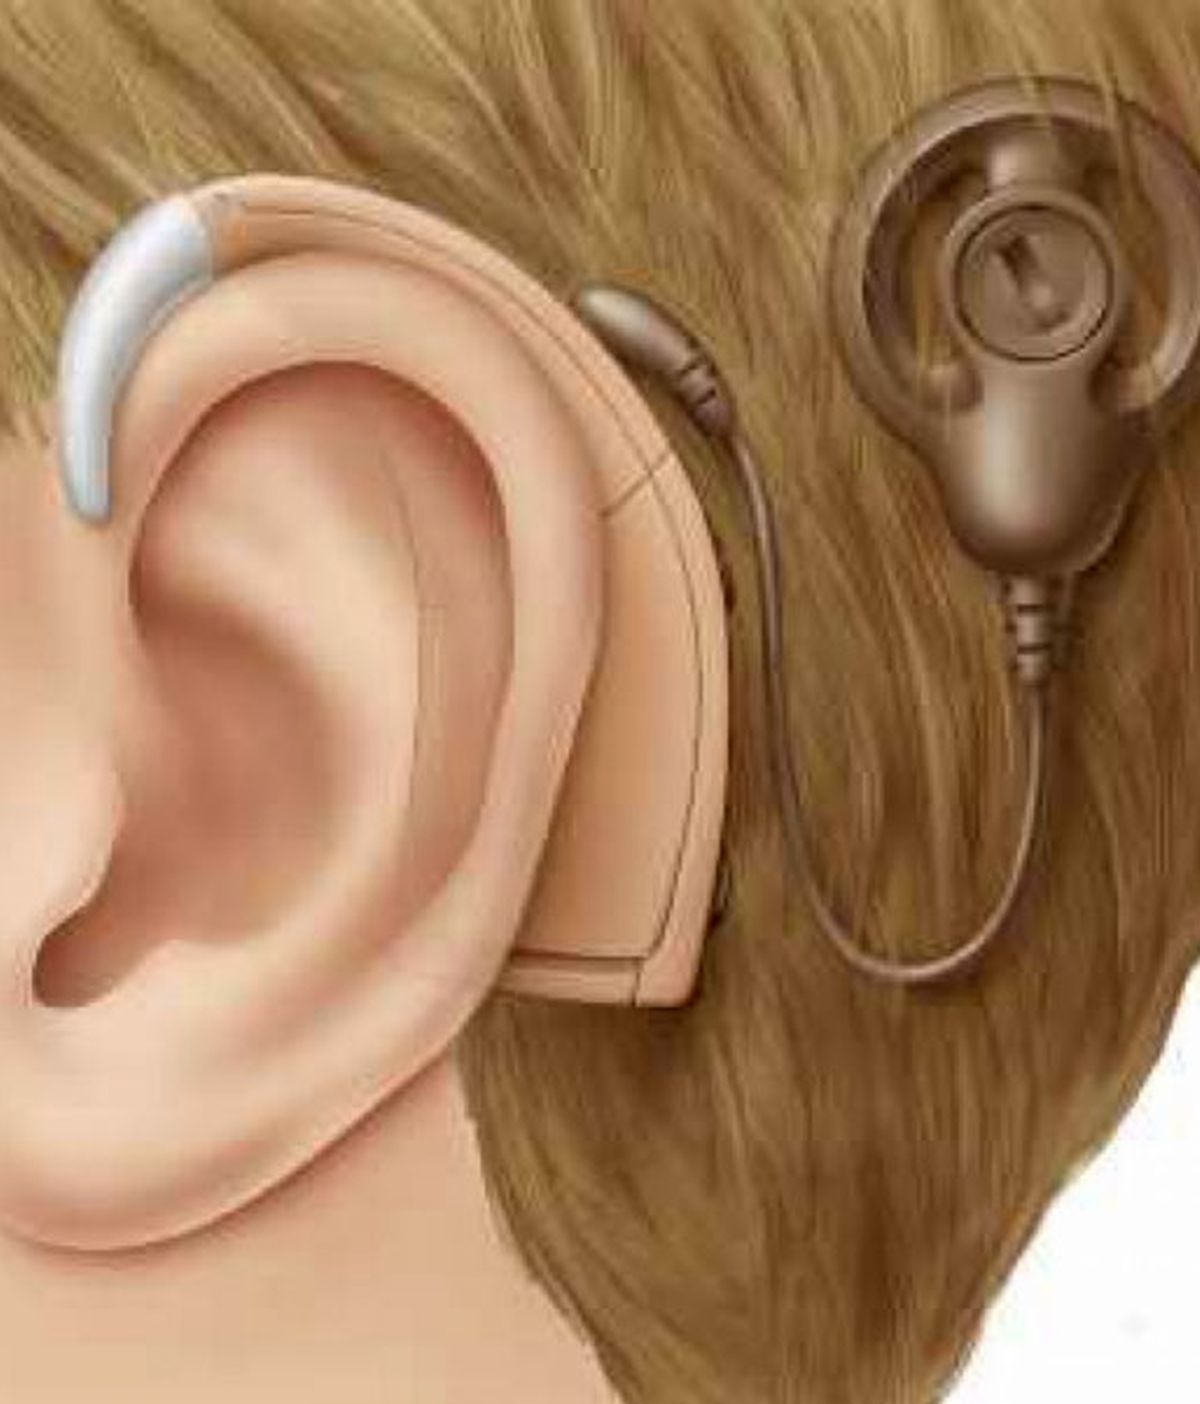 aparato sordo, implante coclear, sordos